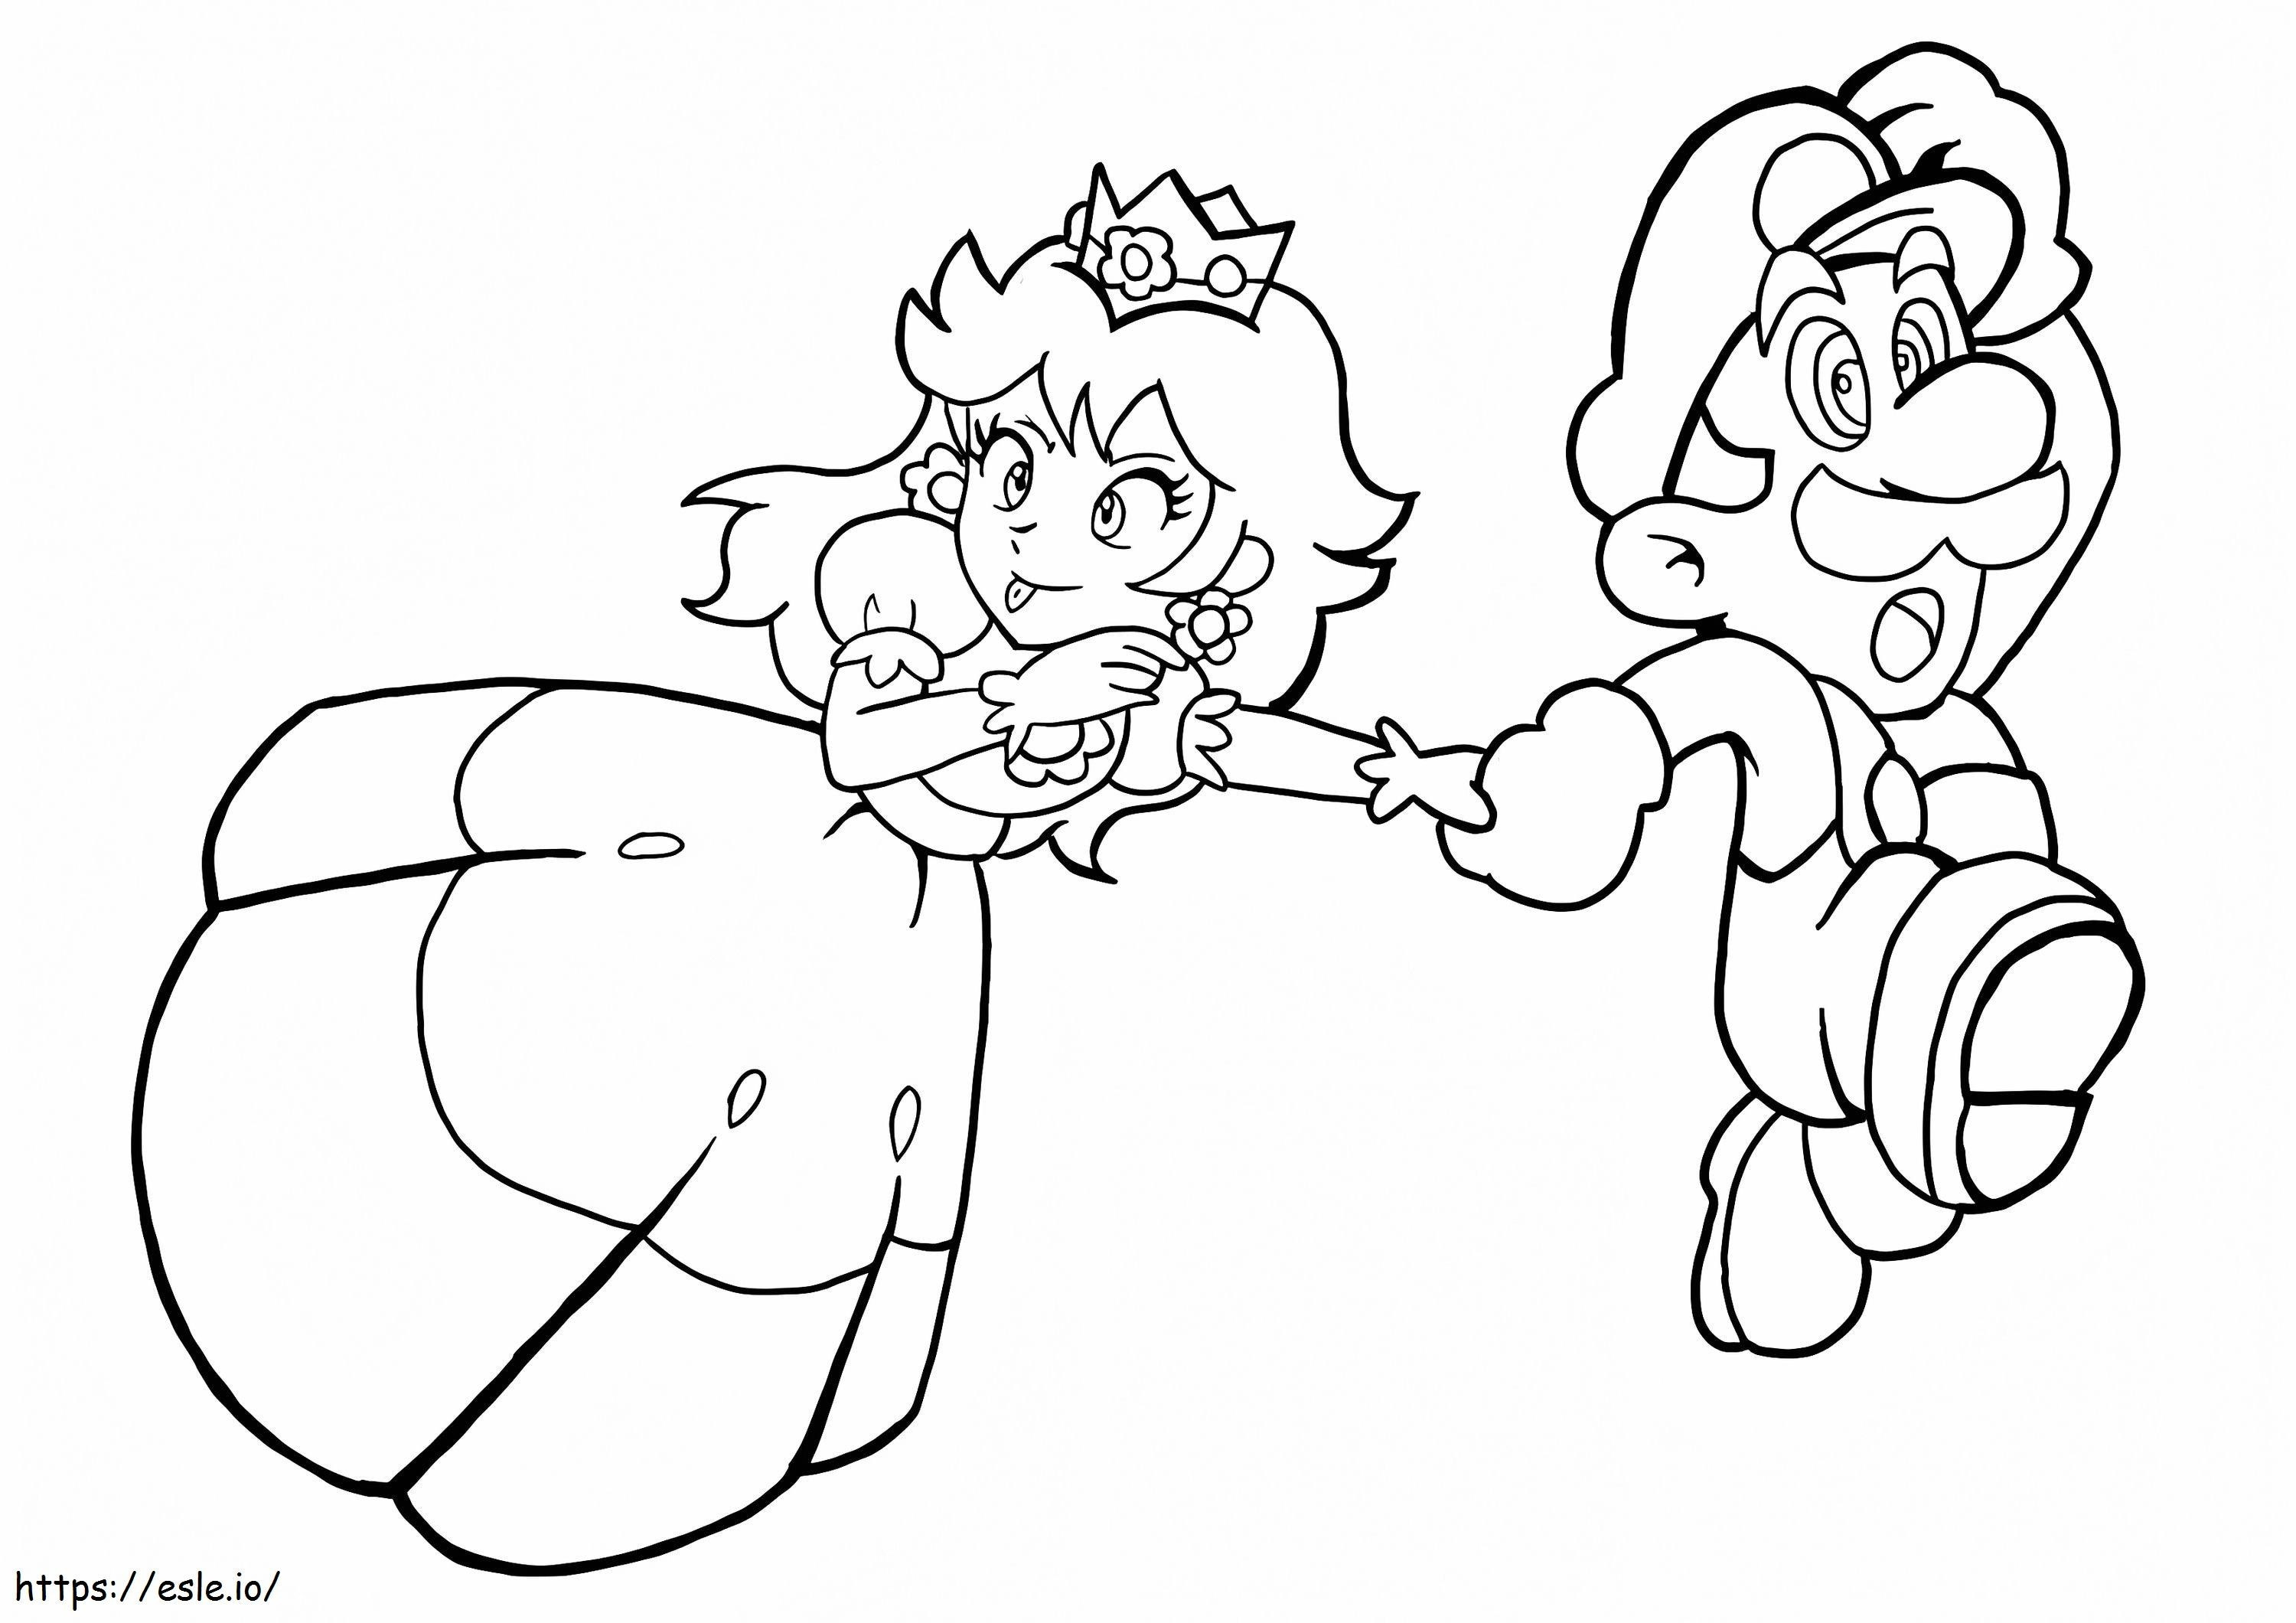 Fun Princess Peach And Mario Running coloring page